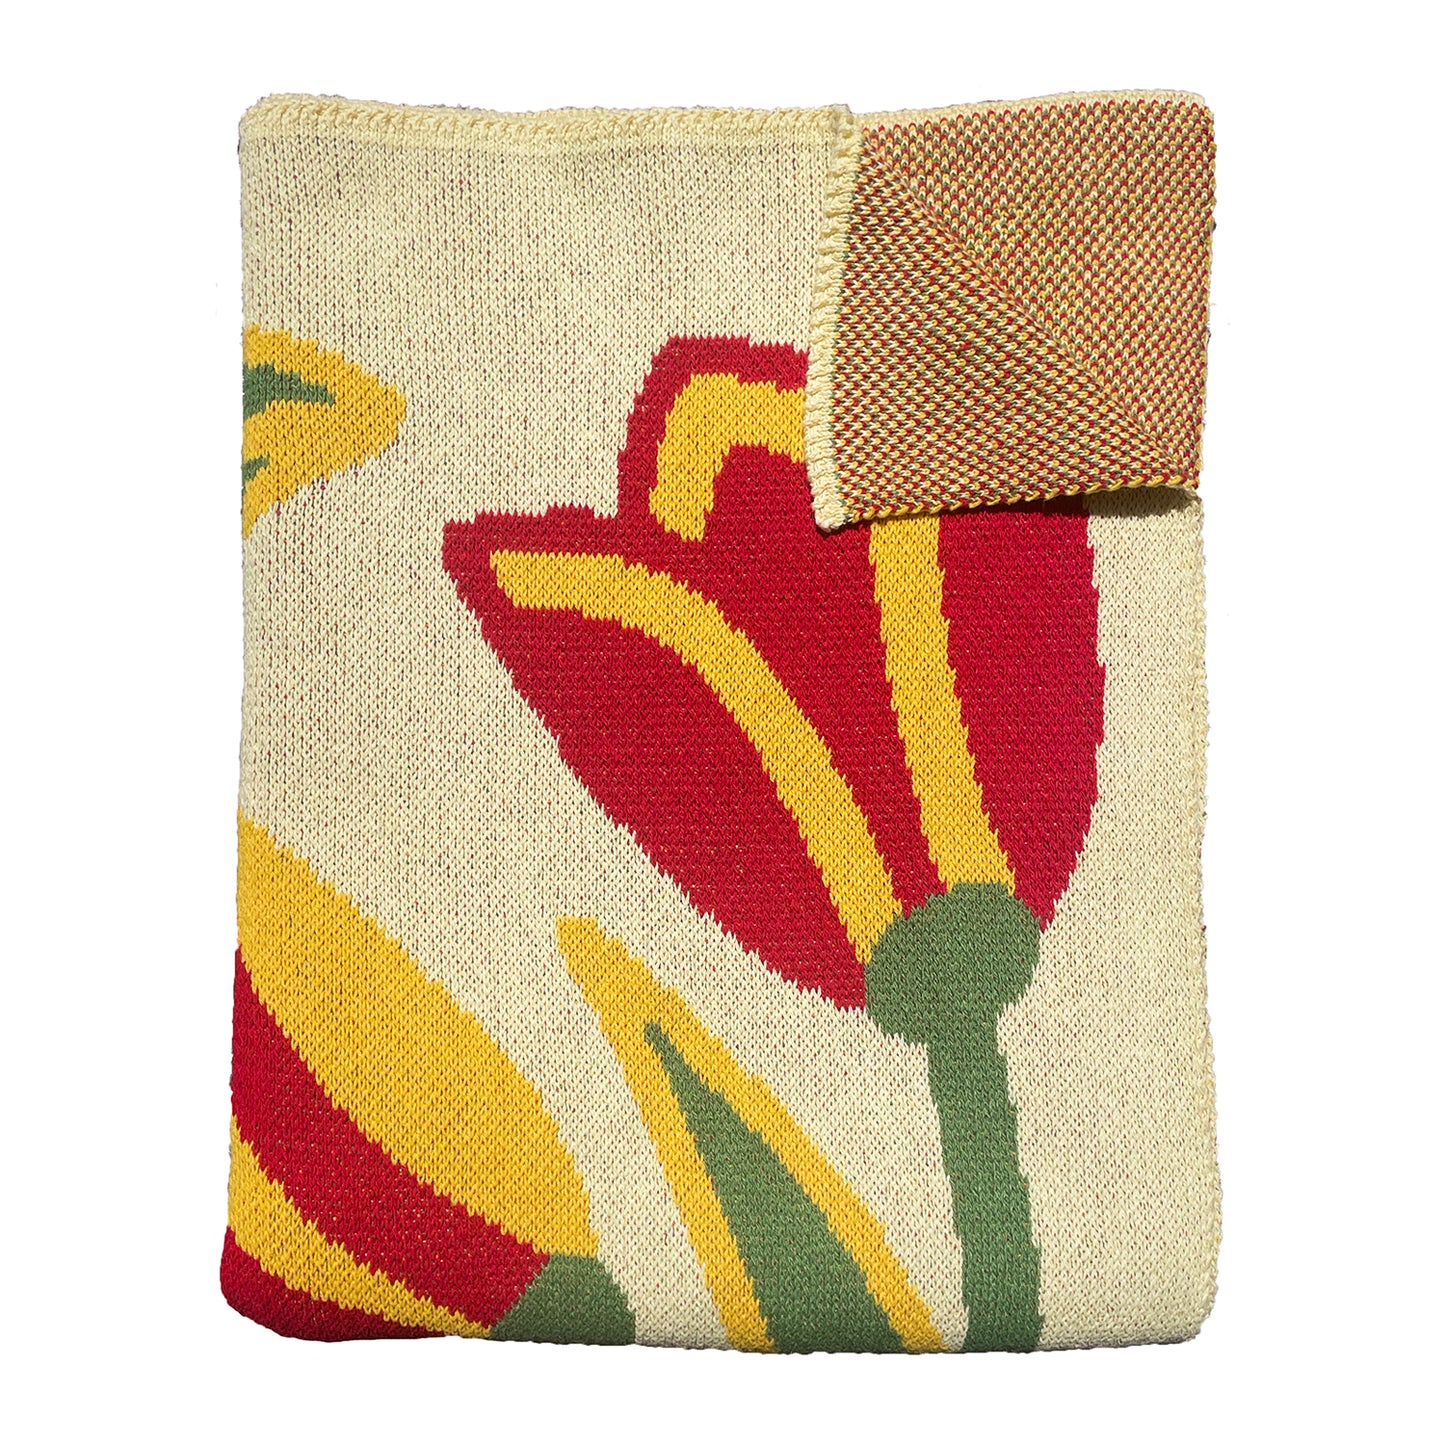 Yellow Tulips Throw Blanket